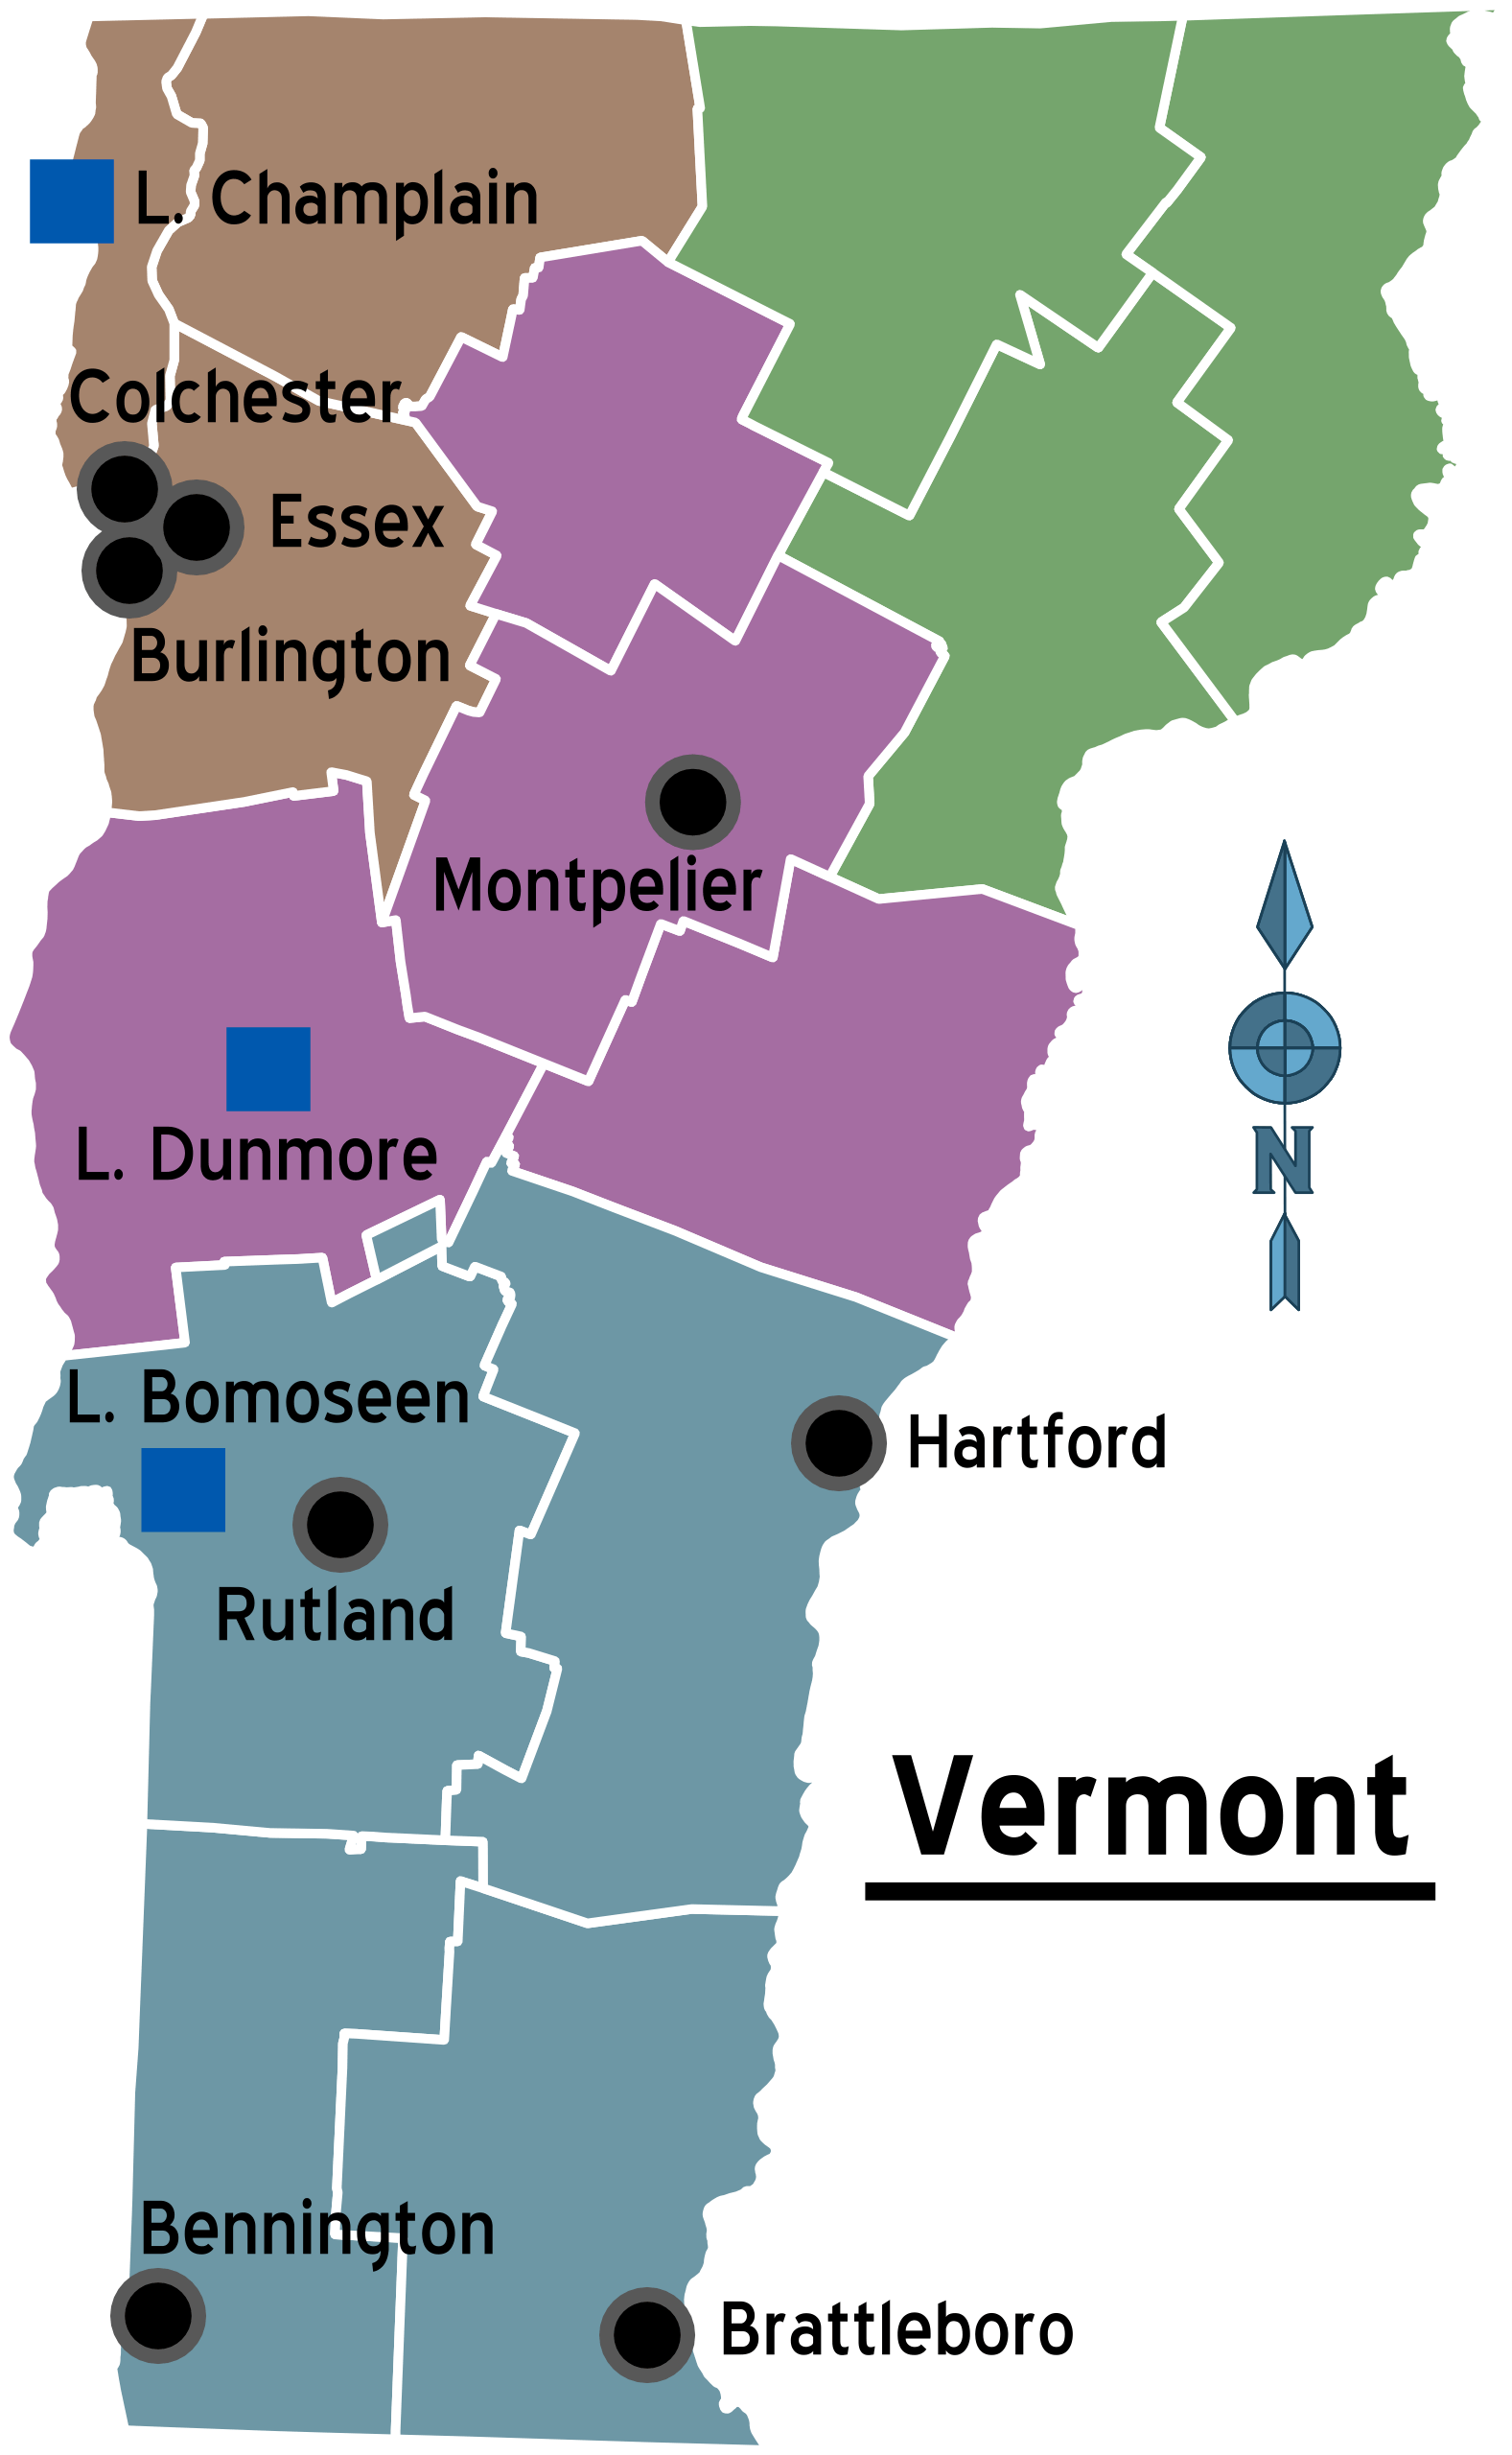 harita_Vermont_bolgeler.png